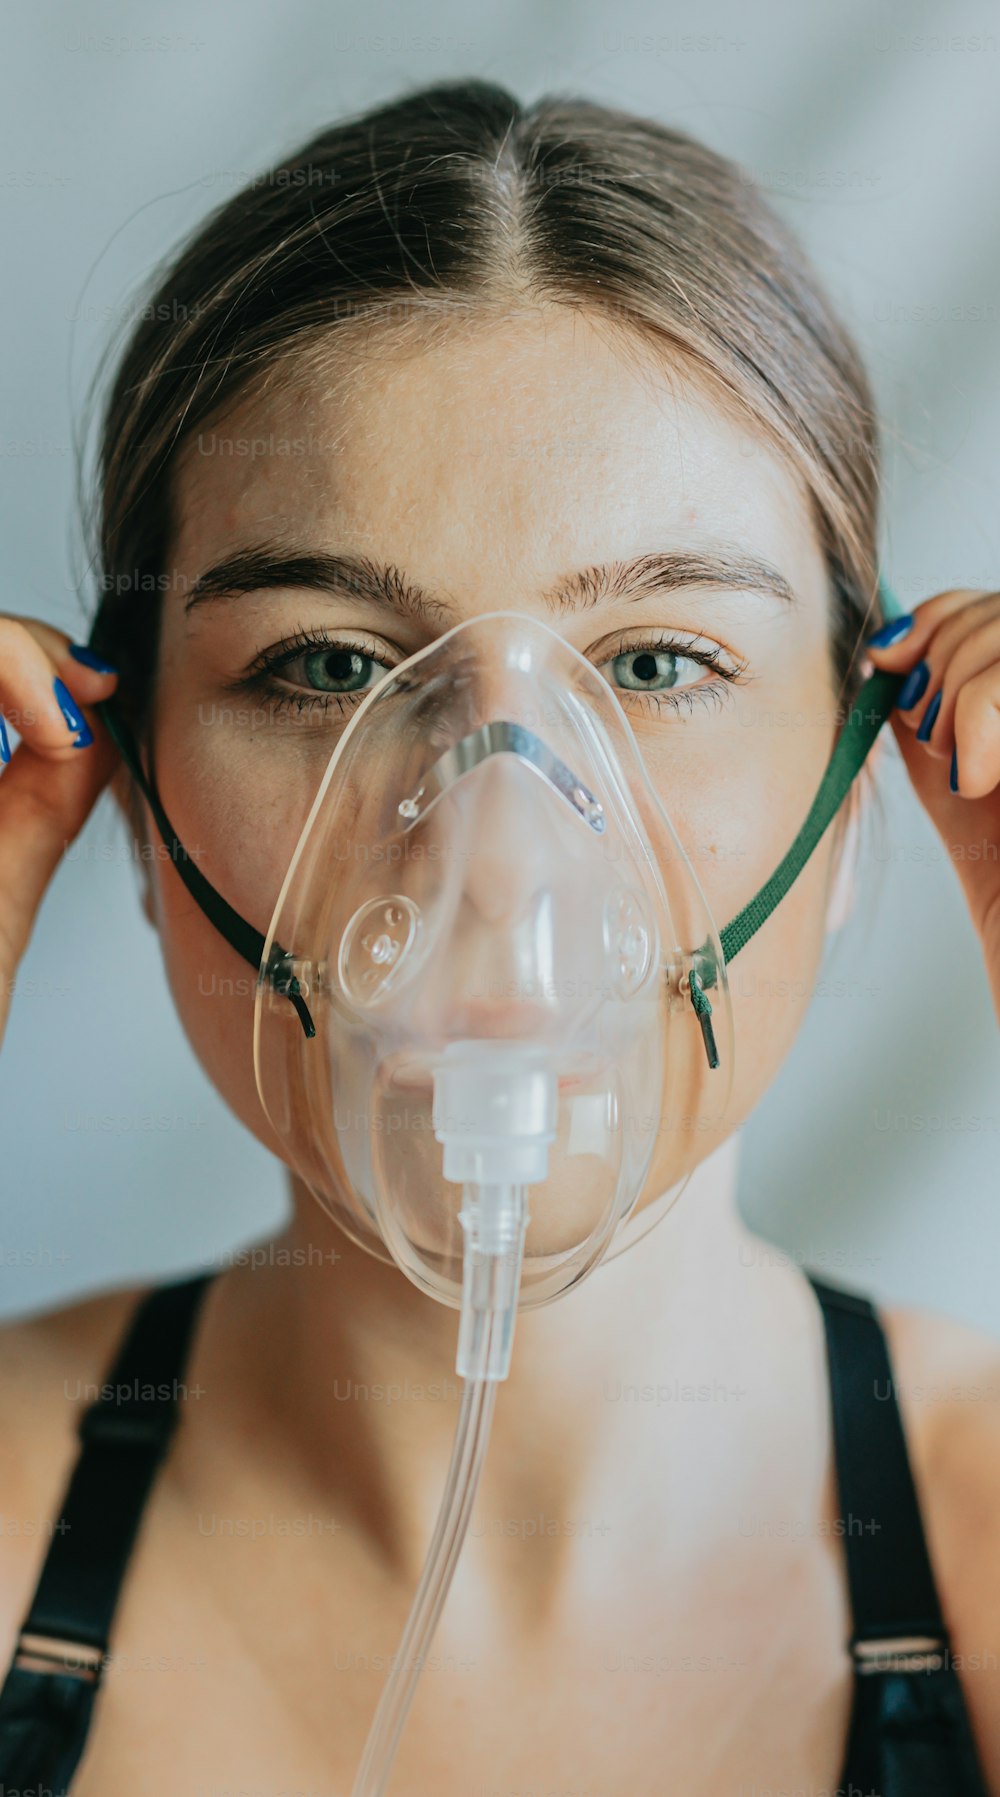 une femme portant un masque à oxygène avec un tube respiratoire attaché à son visage